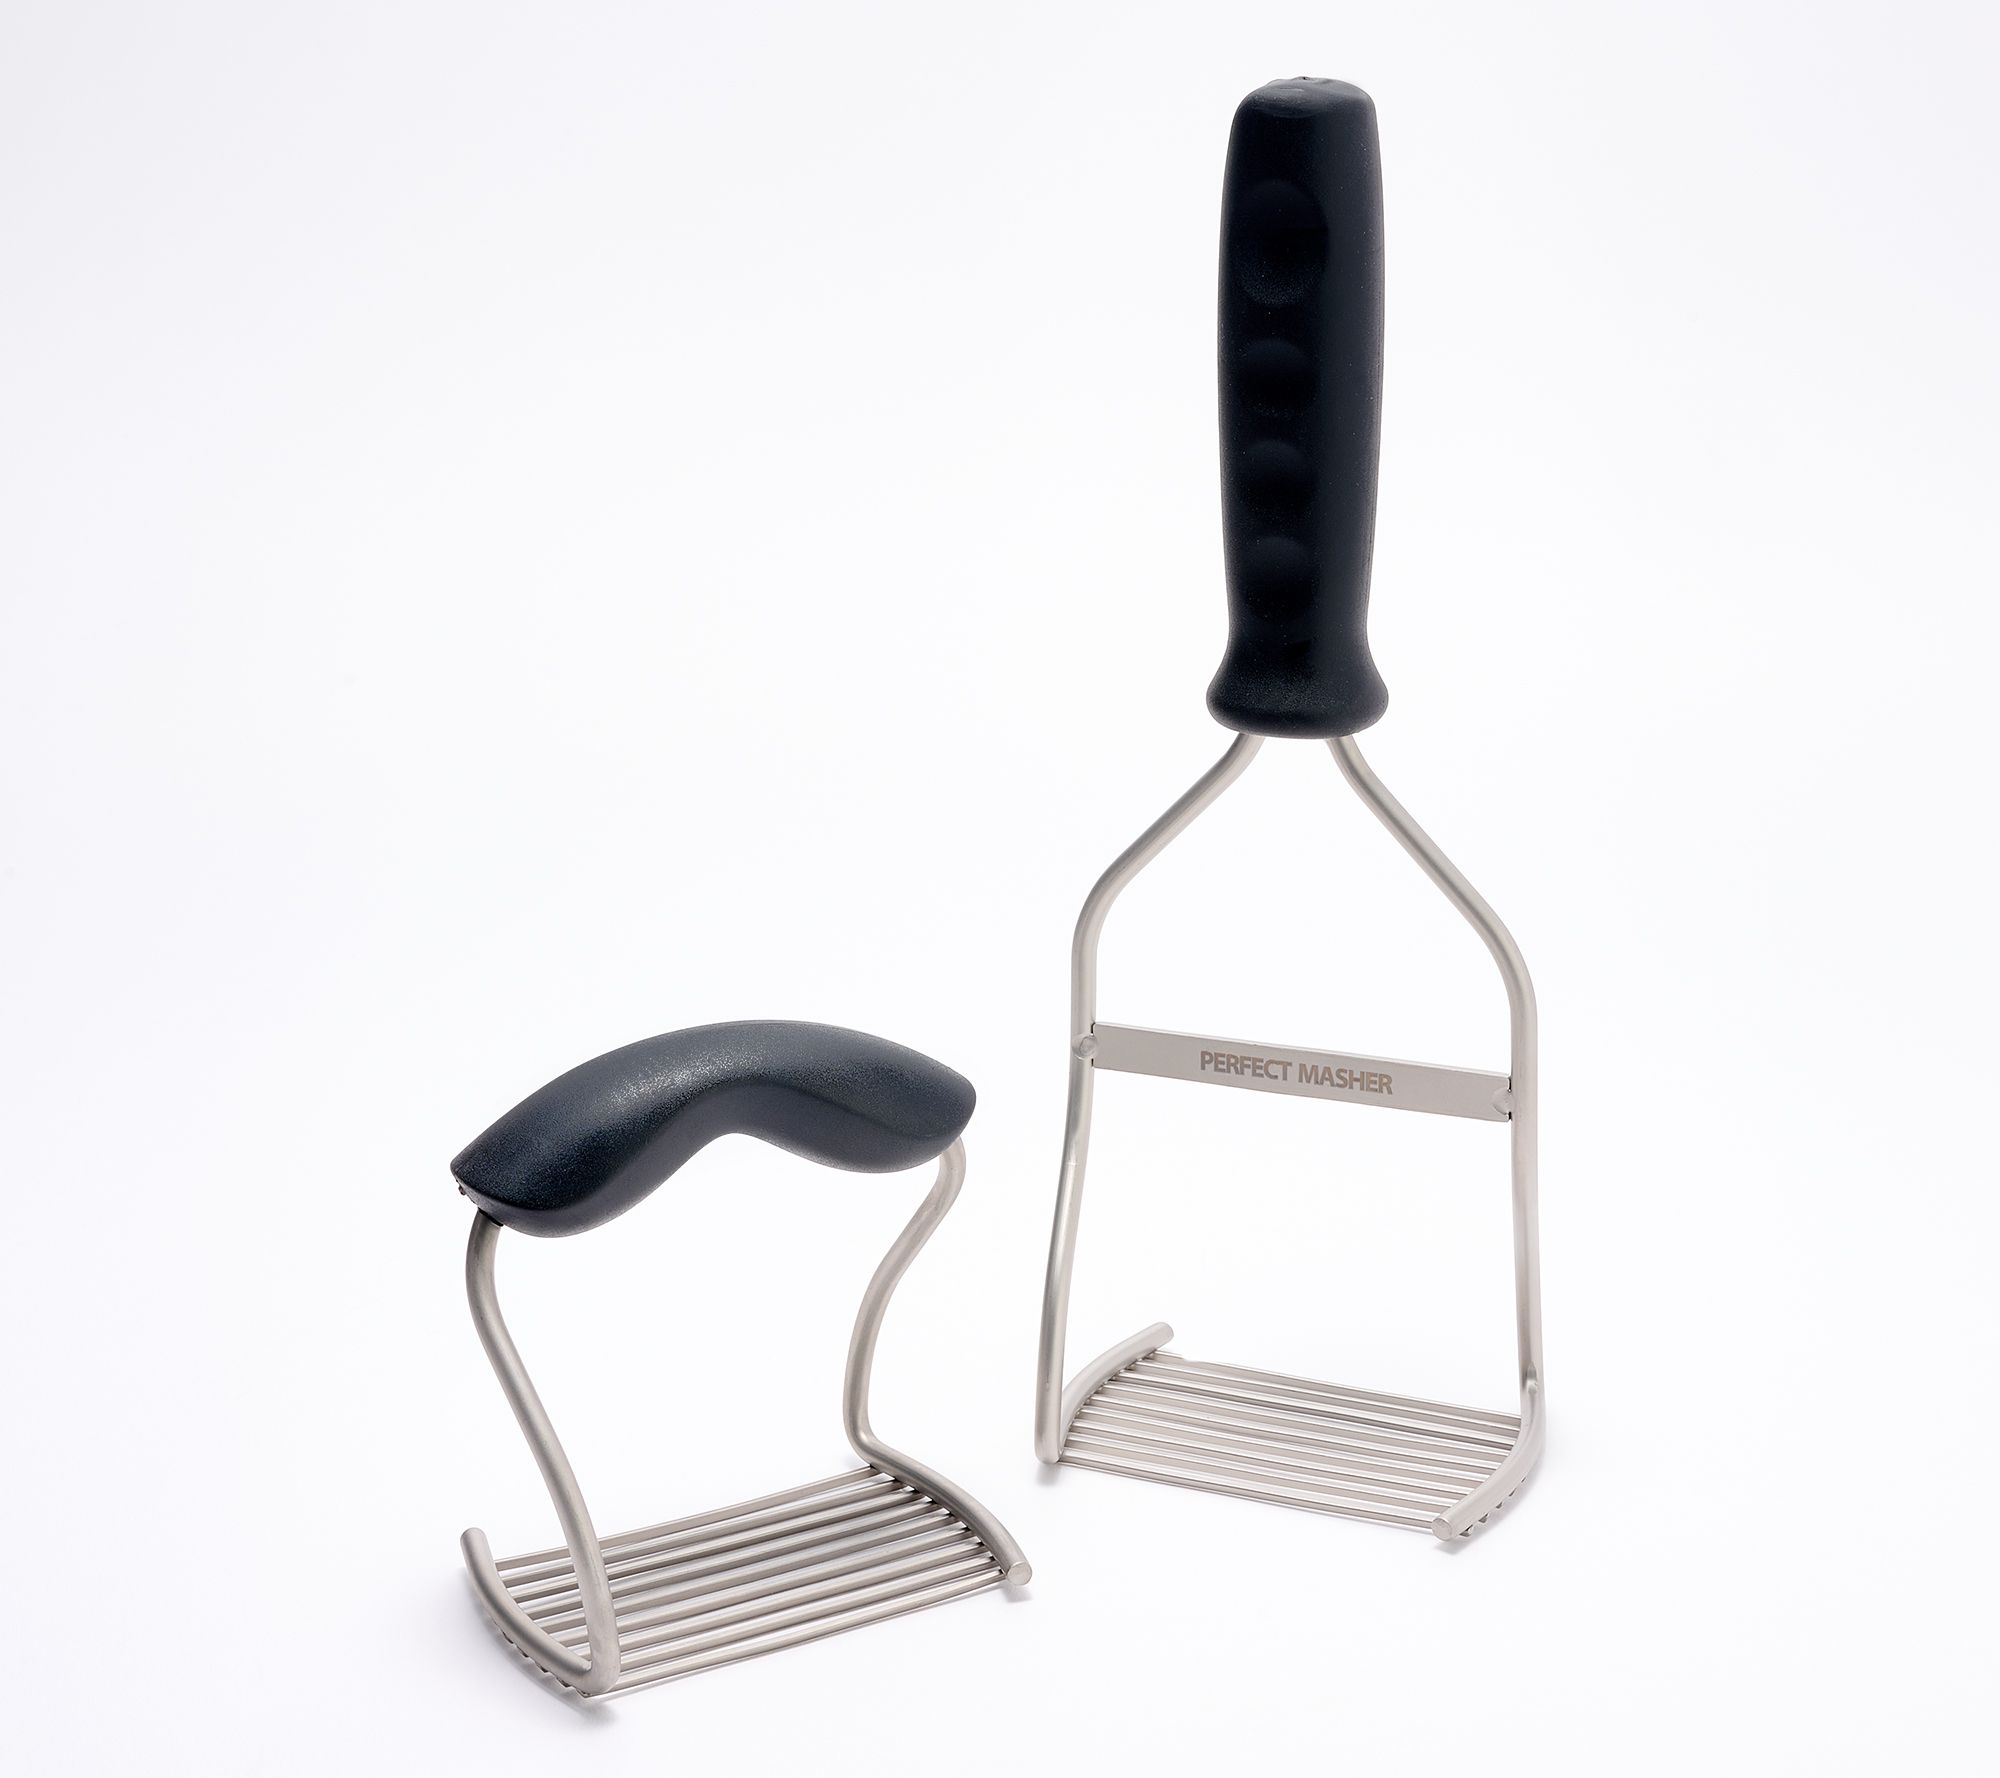 KE-Classic Bendable Eating Utensils Set : easy to grip bendable utensils